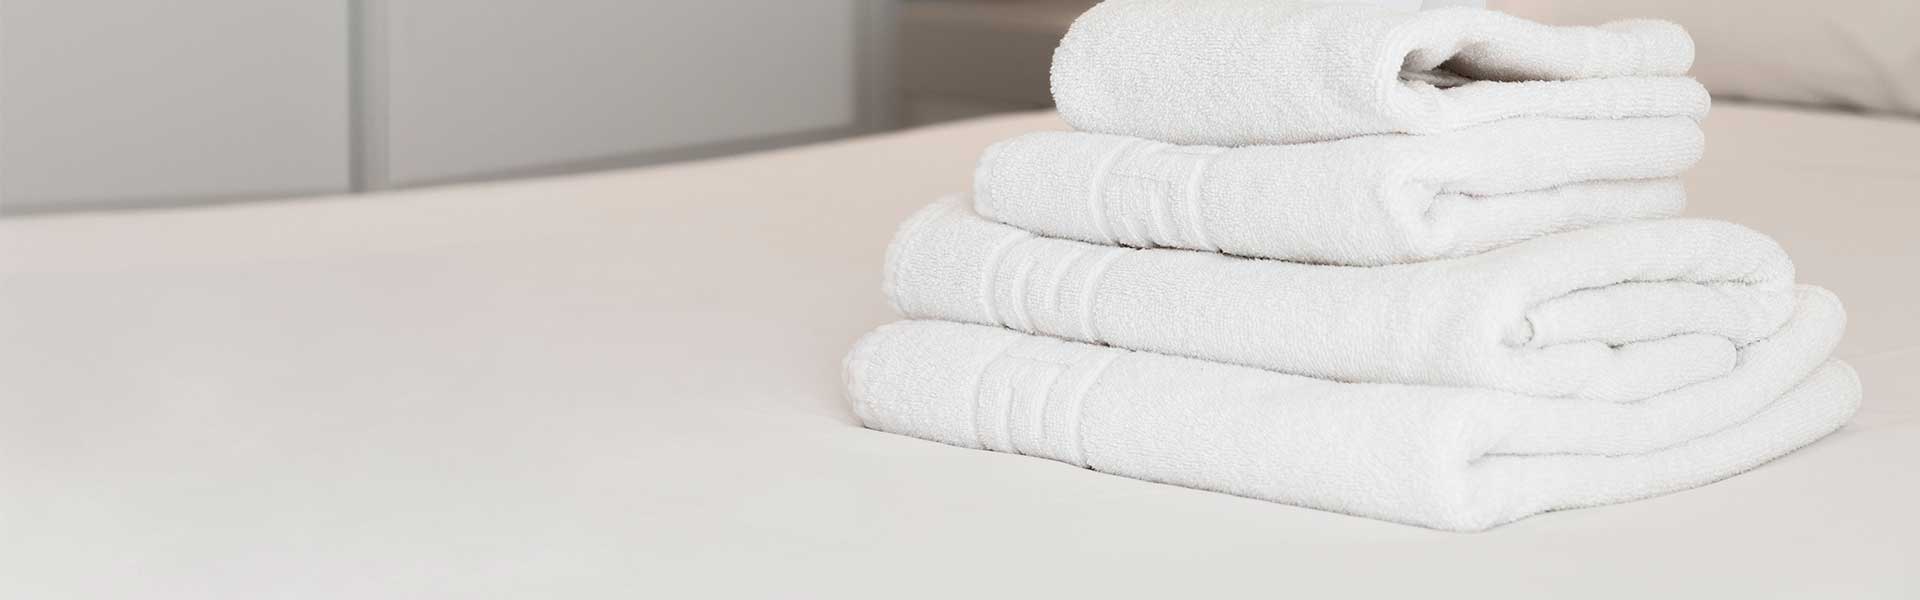 ¿Cuáles son las mejores toallas para hoteles?